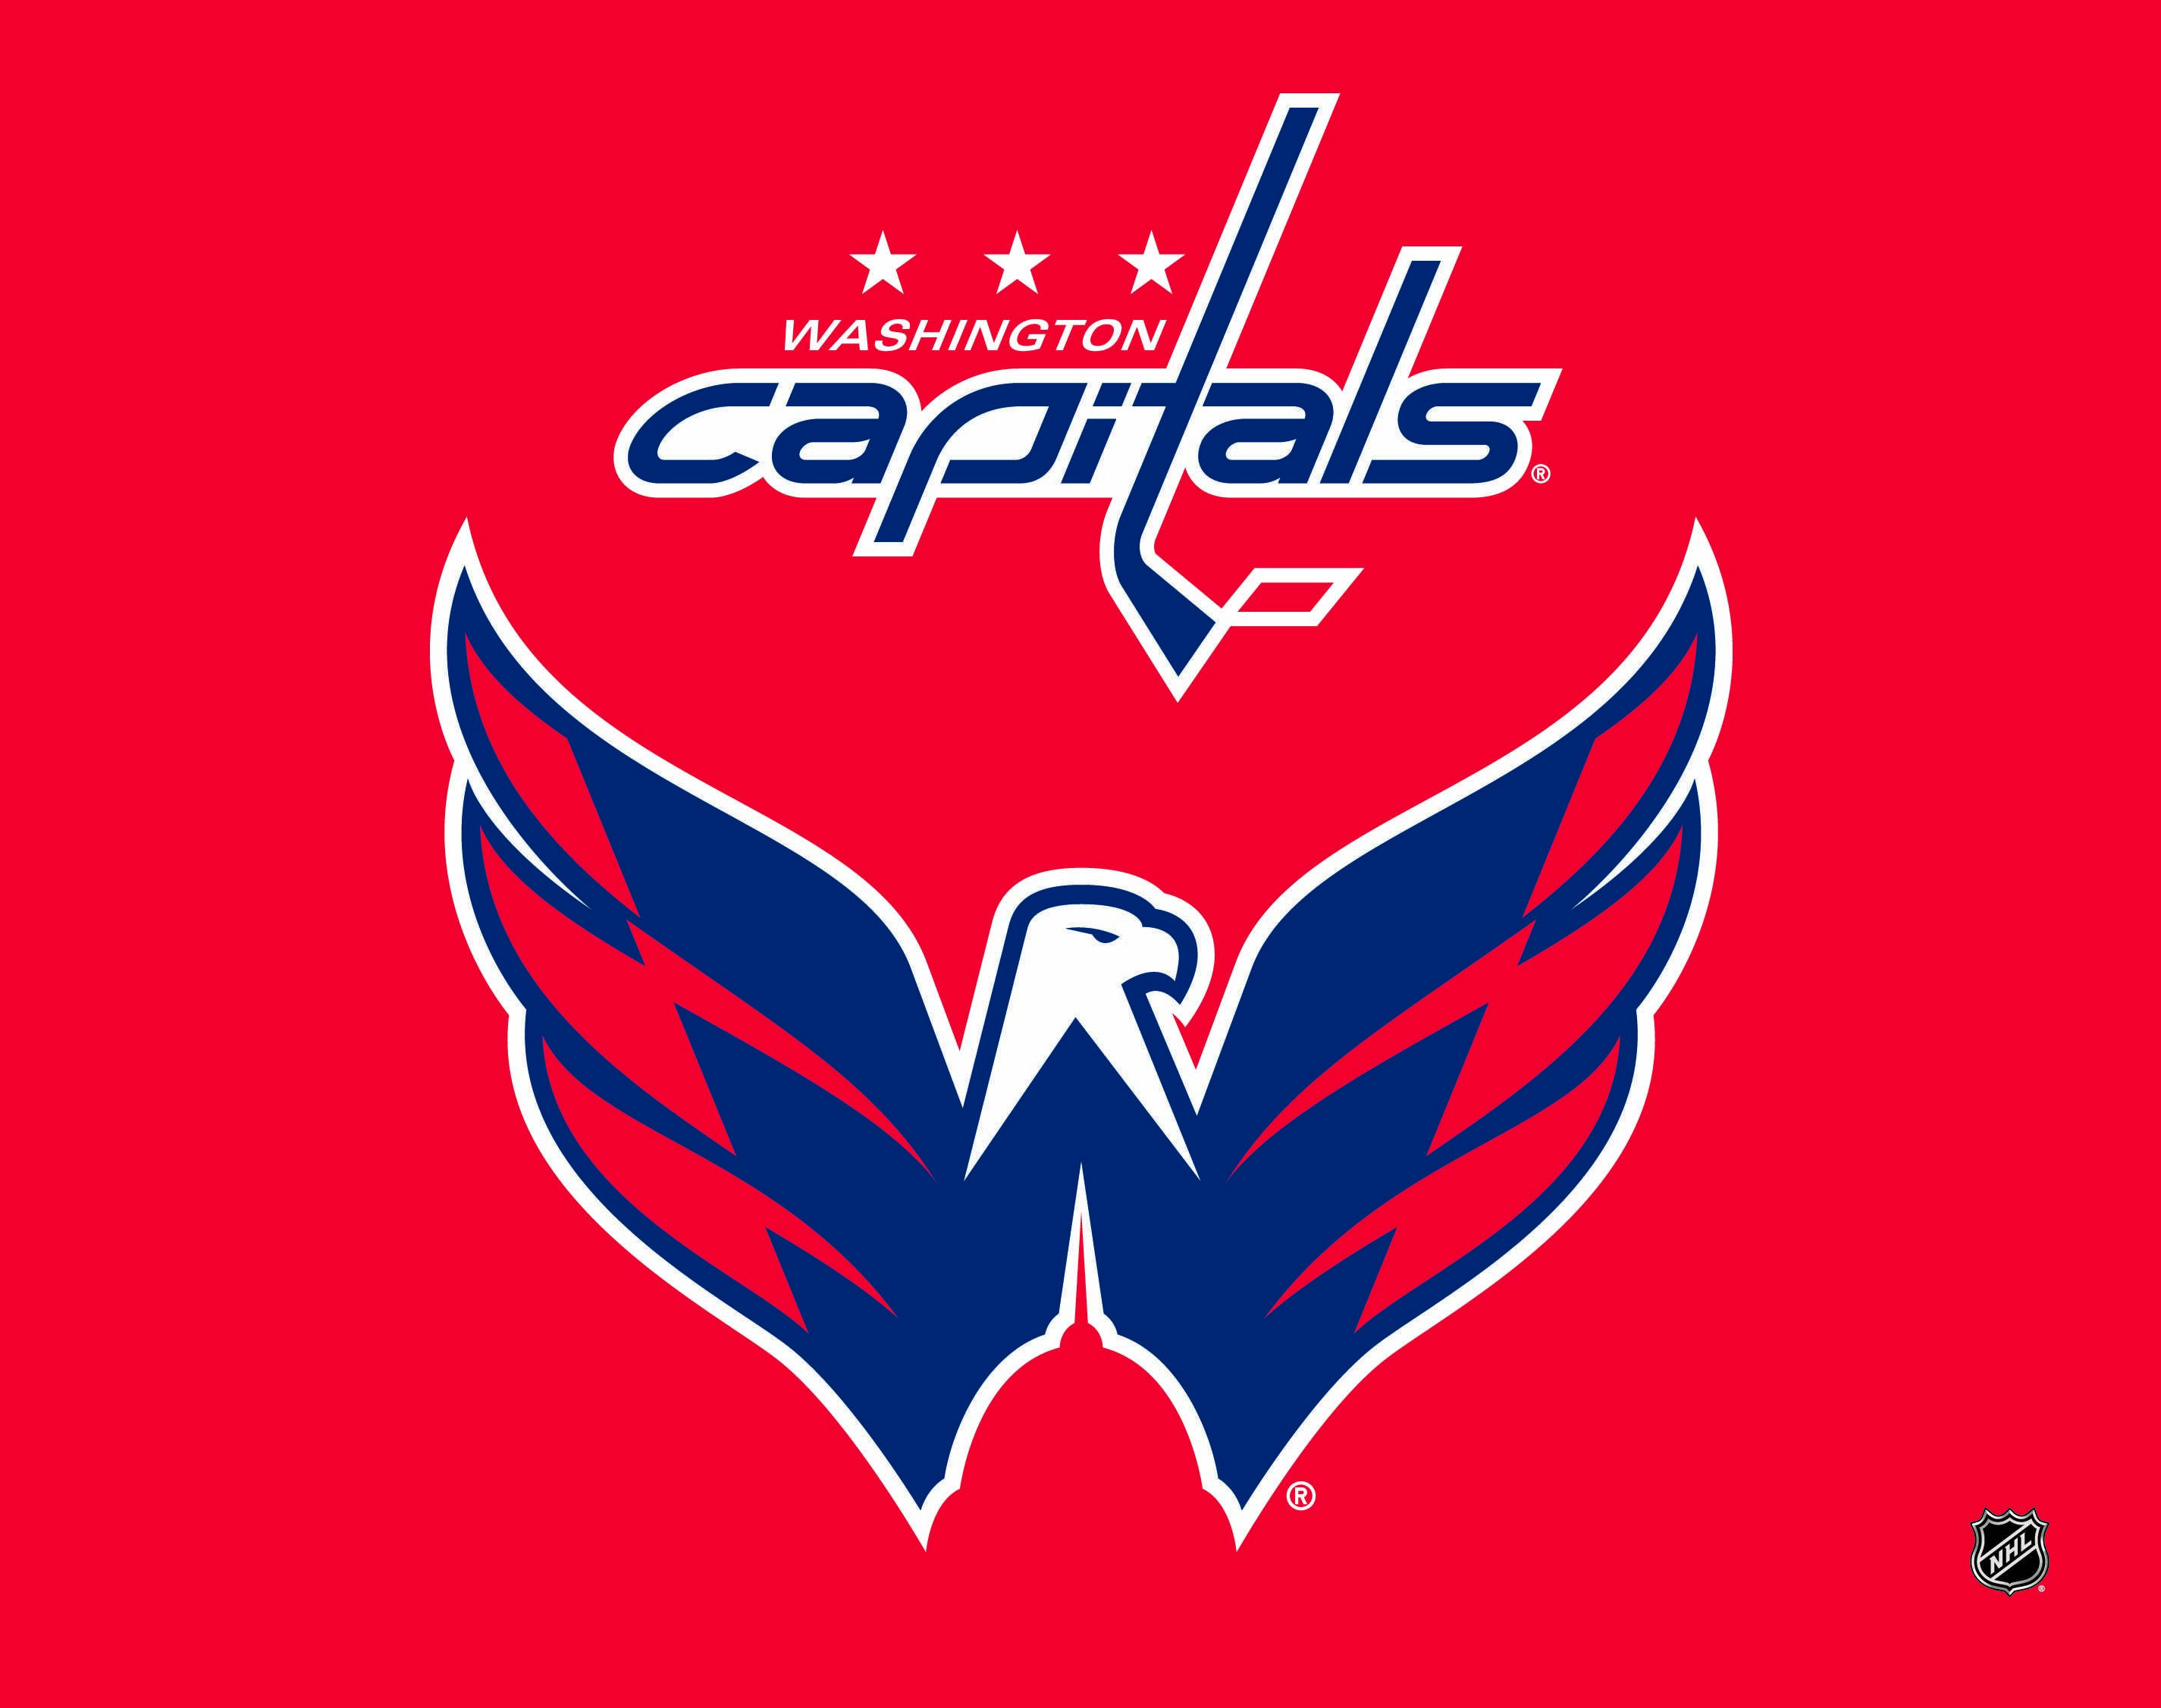 Washington Capitals Logo - Washington Capitals Logo | NHL | Washington Capitals, Capitals ...